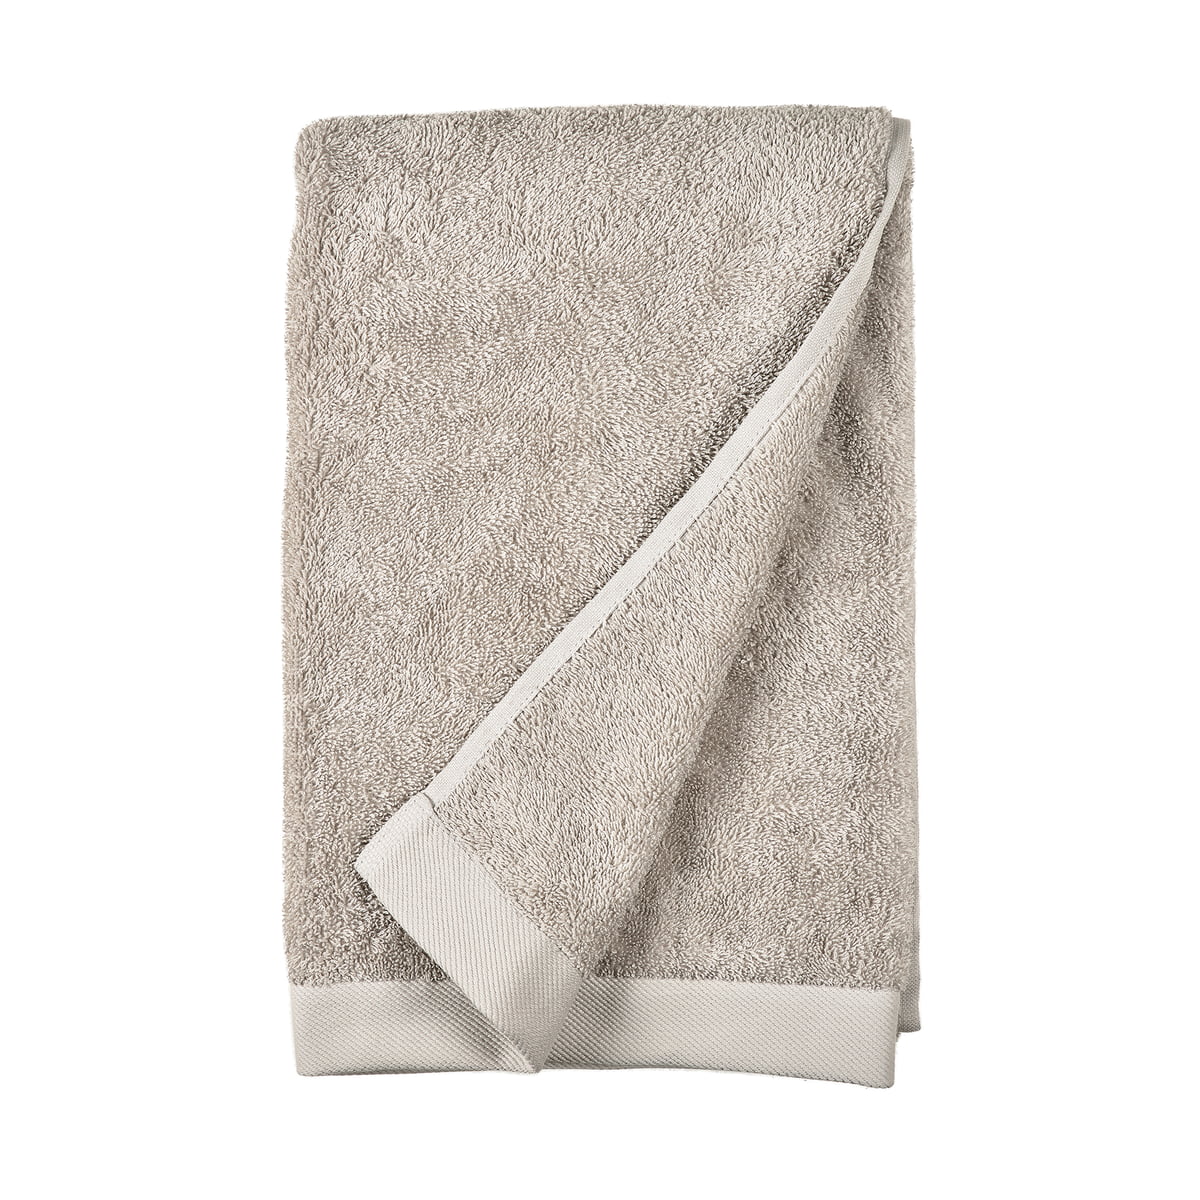 södahl - comfort drap de bain, 70 x 140 cm, gris clair